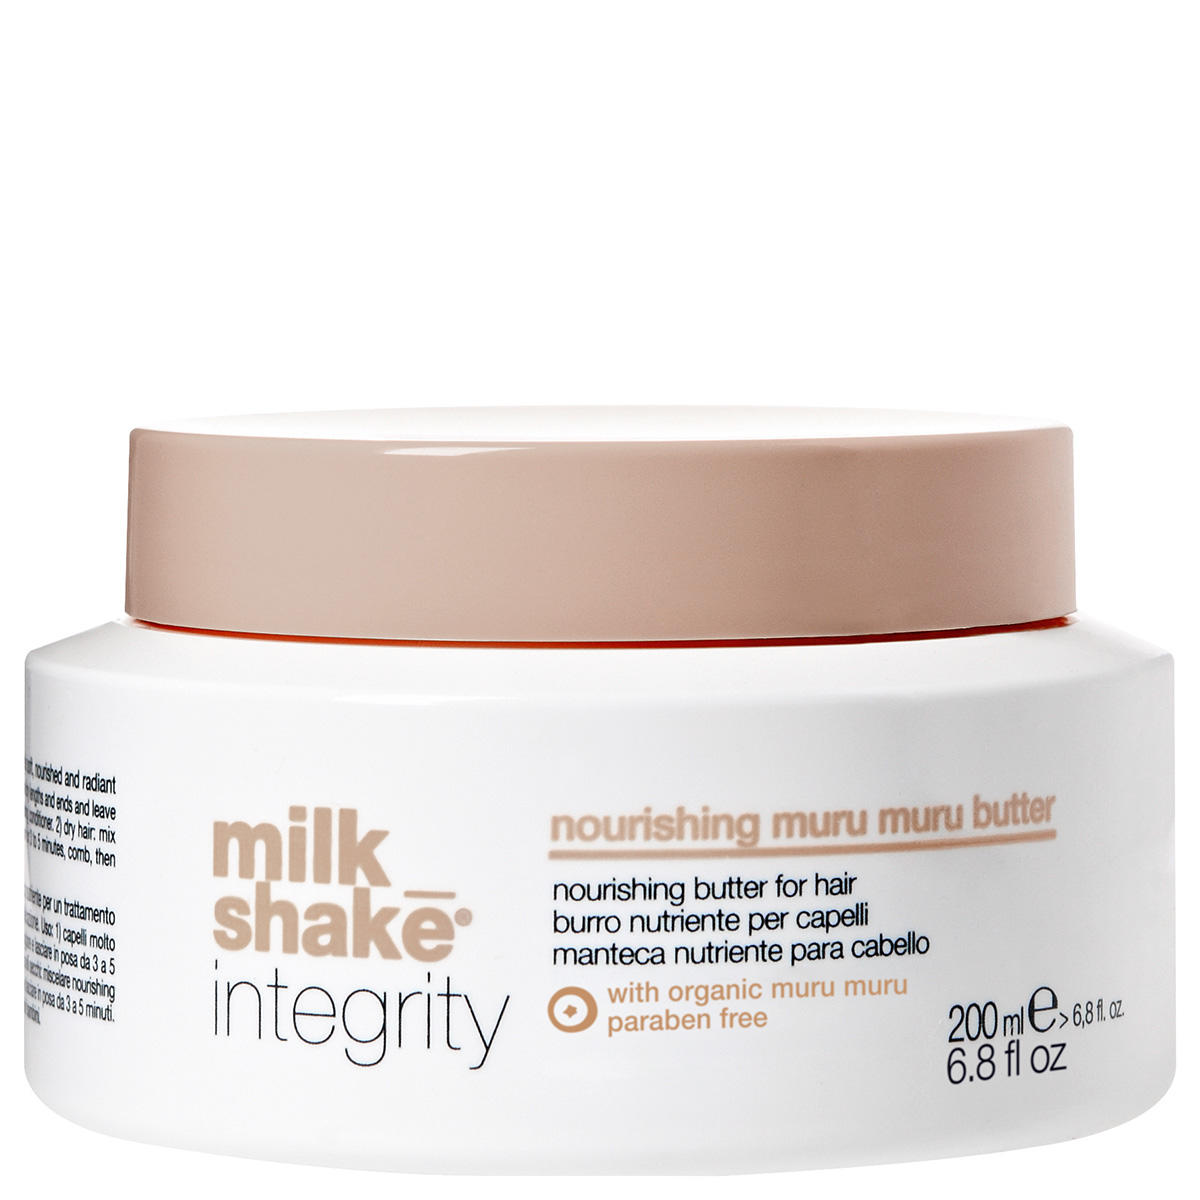 milk_shake Integrity Nourishing Muru Muru Butter 200 ml - 1